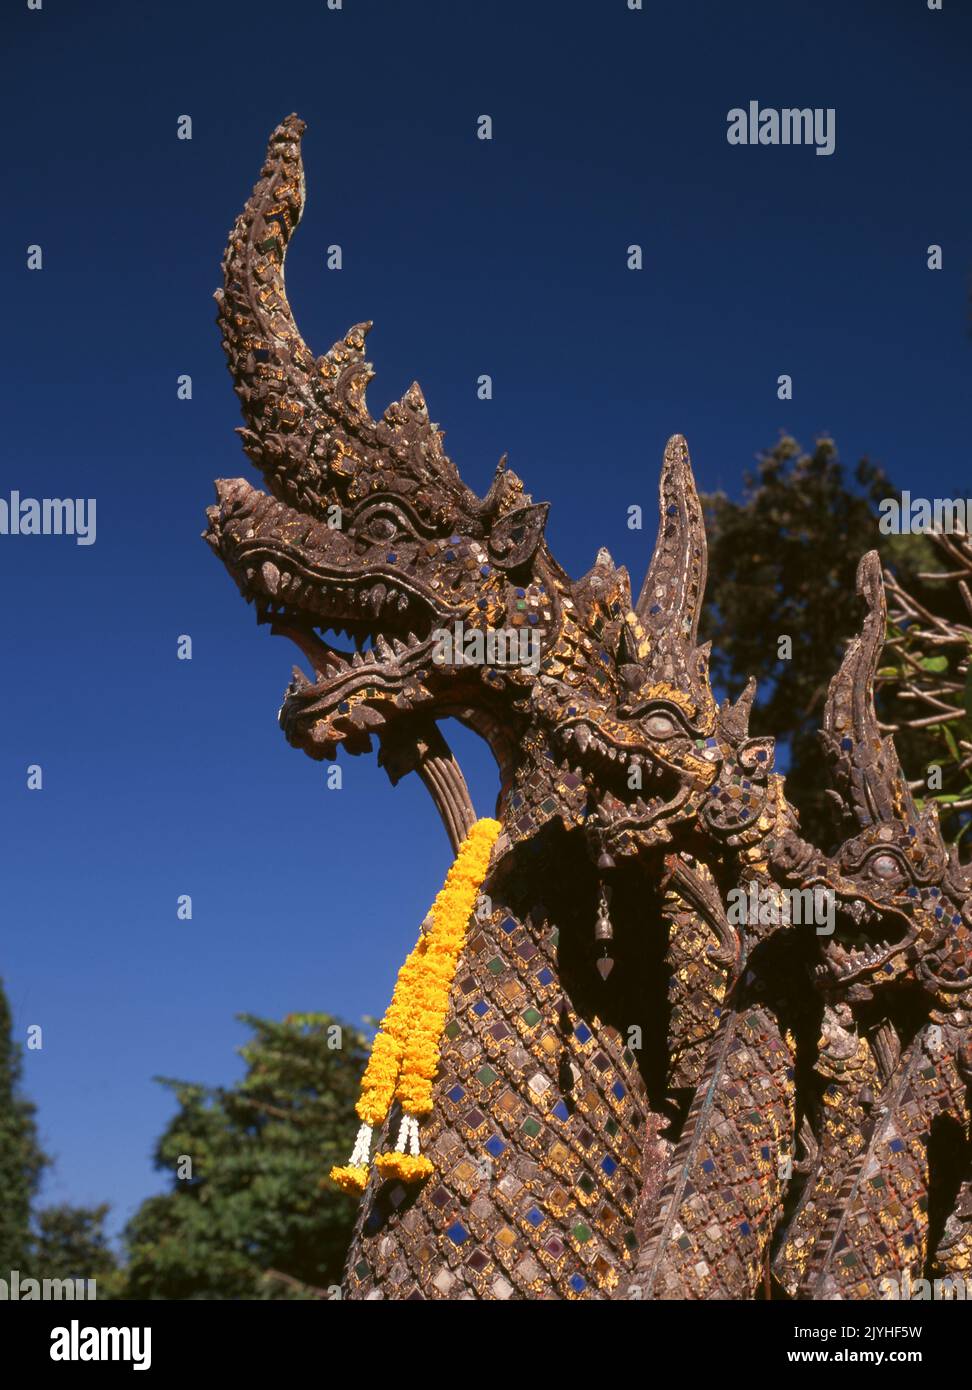 Thailand: Naga (mythische Schlange) Balustrade, Wat Phrathat Doi Suthep, ein buddhistischer Tempel der Theravada auf dem Doi Suthep (Suthep Berg), mit Blick auf die Stadt Chiang Mai. Der prächtige vergoldete Chedi aus dem 16.. Jahrhundert bietet einen herrlichen Blick über das Tal Chiang Mai bis zum Fluss Ping. König Mengrai gründete 1296 die Stadt Chiang Mai (was "neue Stadt" bedeutet) und folgte Chiang Rai als Hauptstadt des Lanna-Königreichs nach. Stockfoto